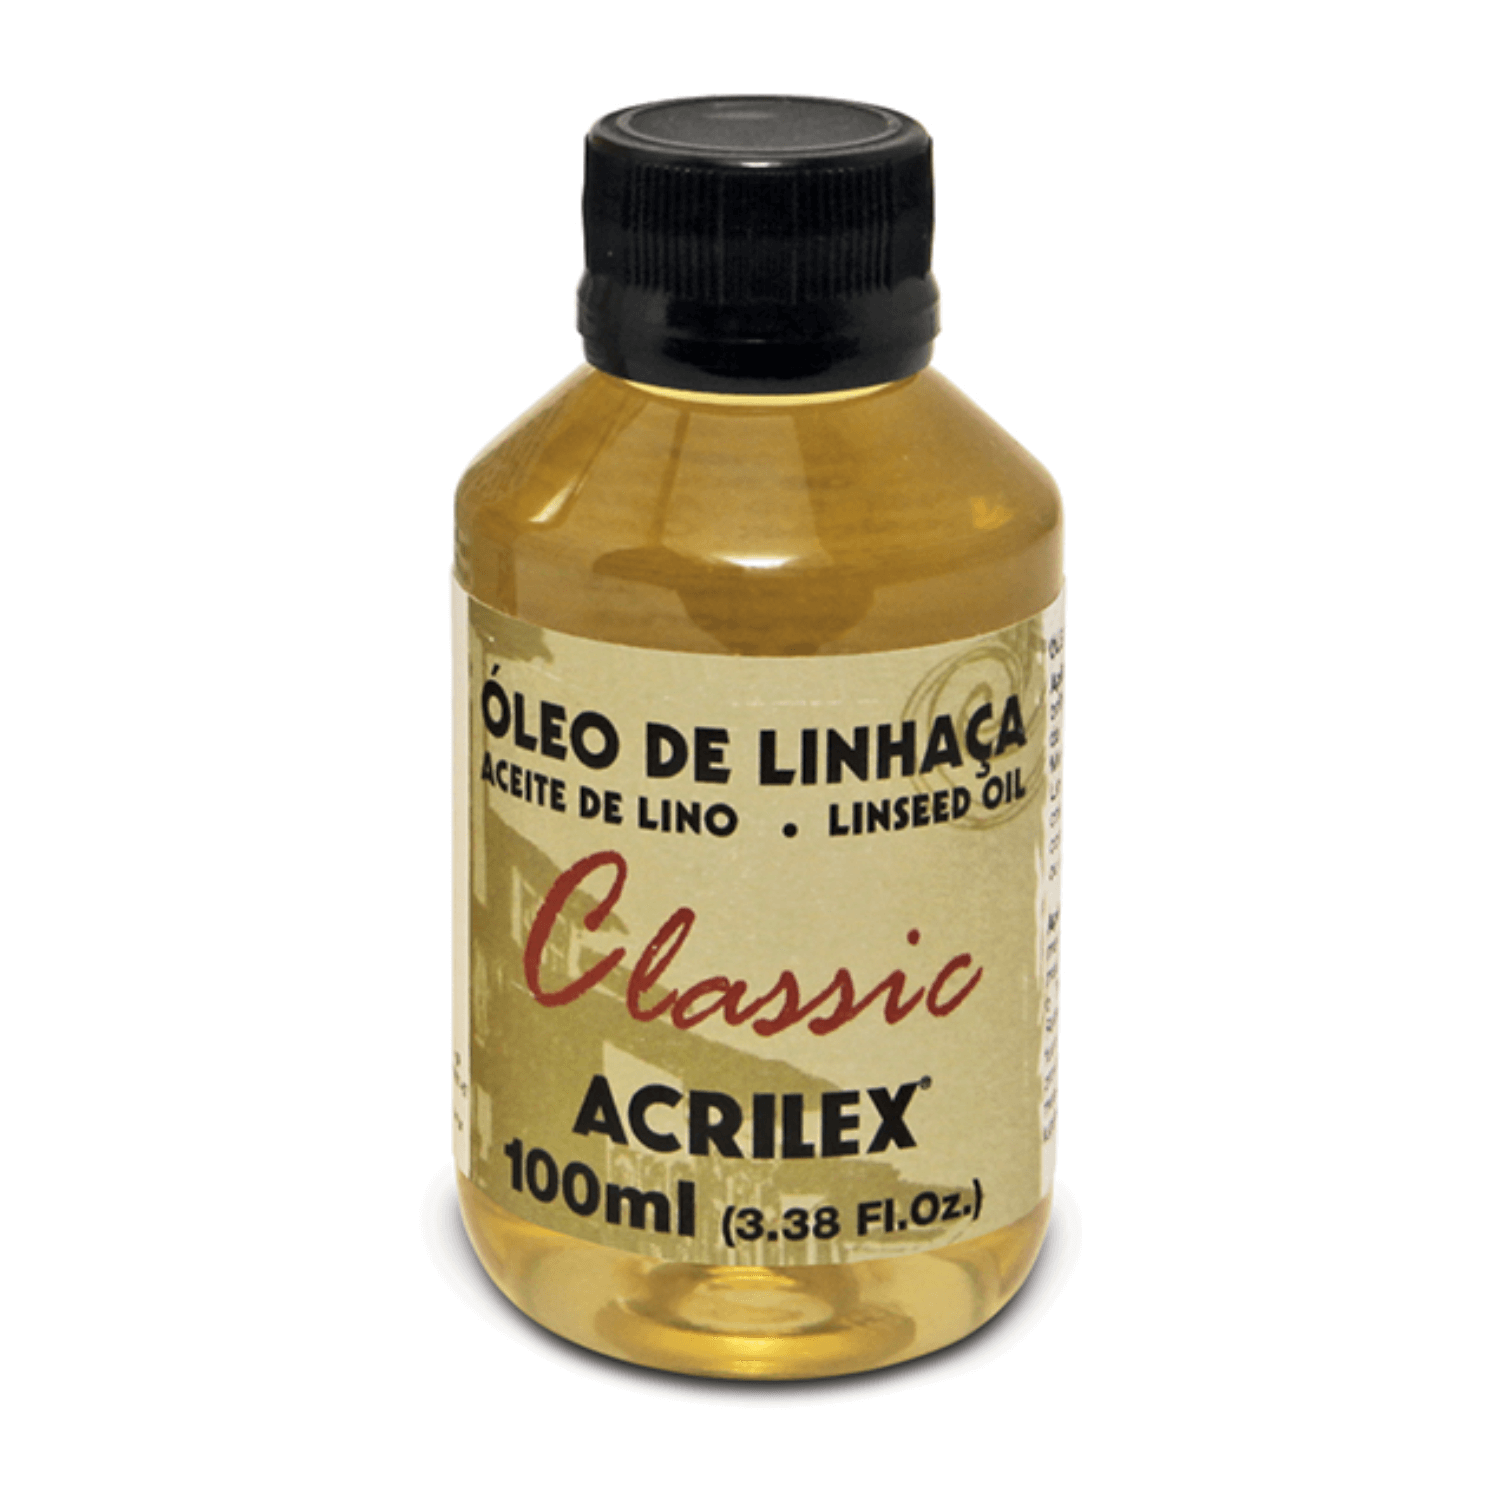 ACRILEX ACEITE DE LINO X 100 ML.